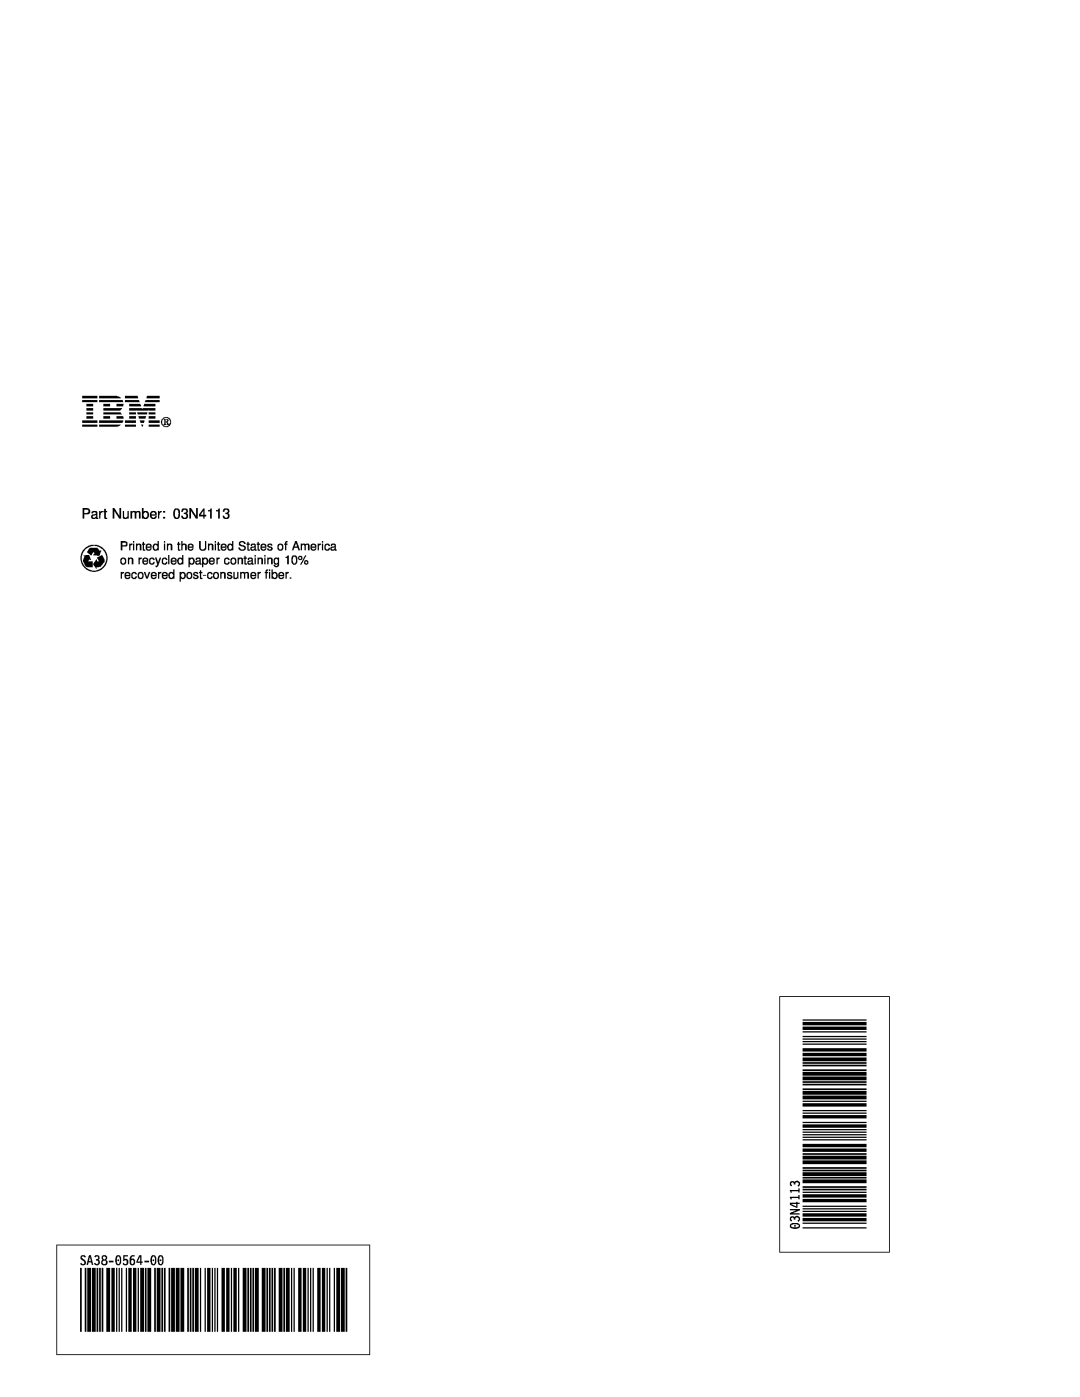 IBM B50 manual Ibm, Part Number 03N4113, SA38 